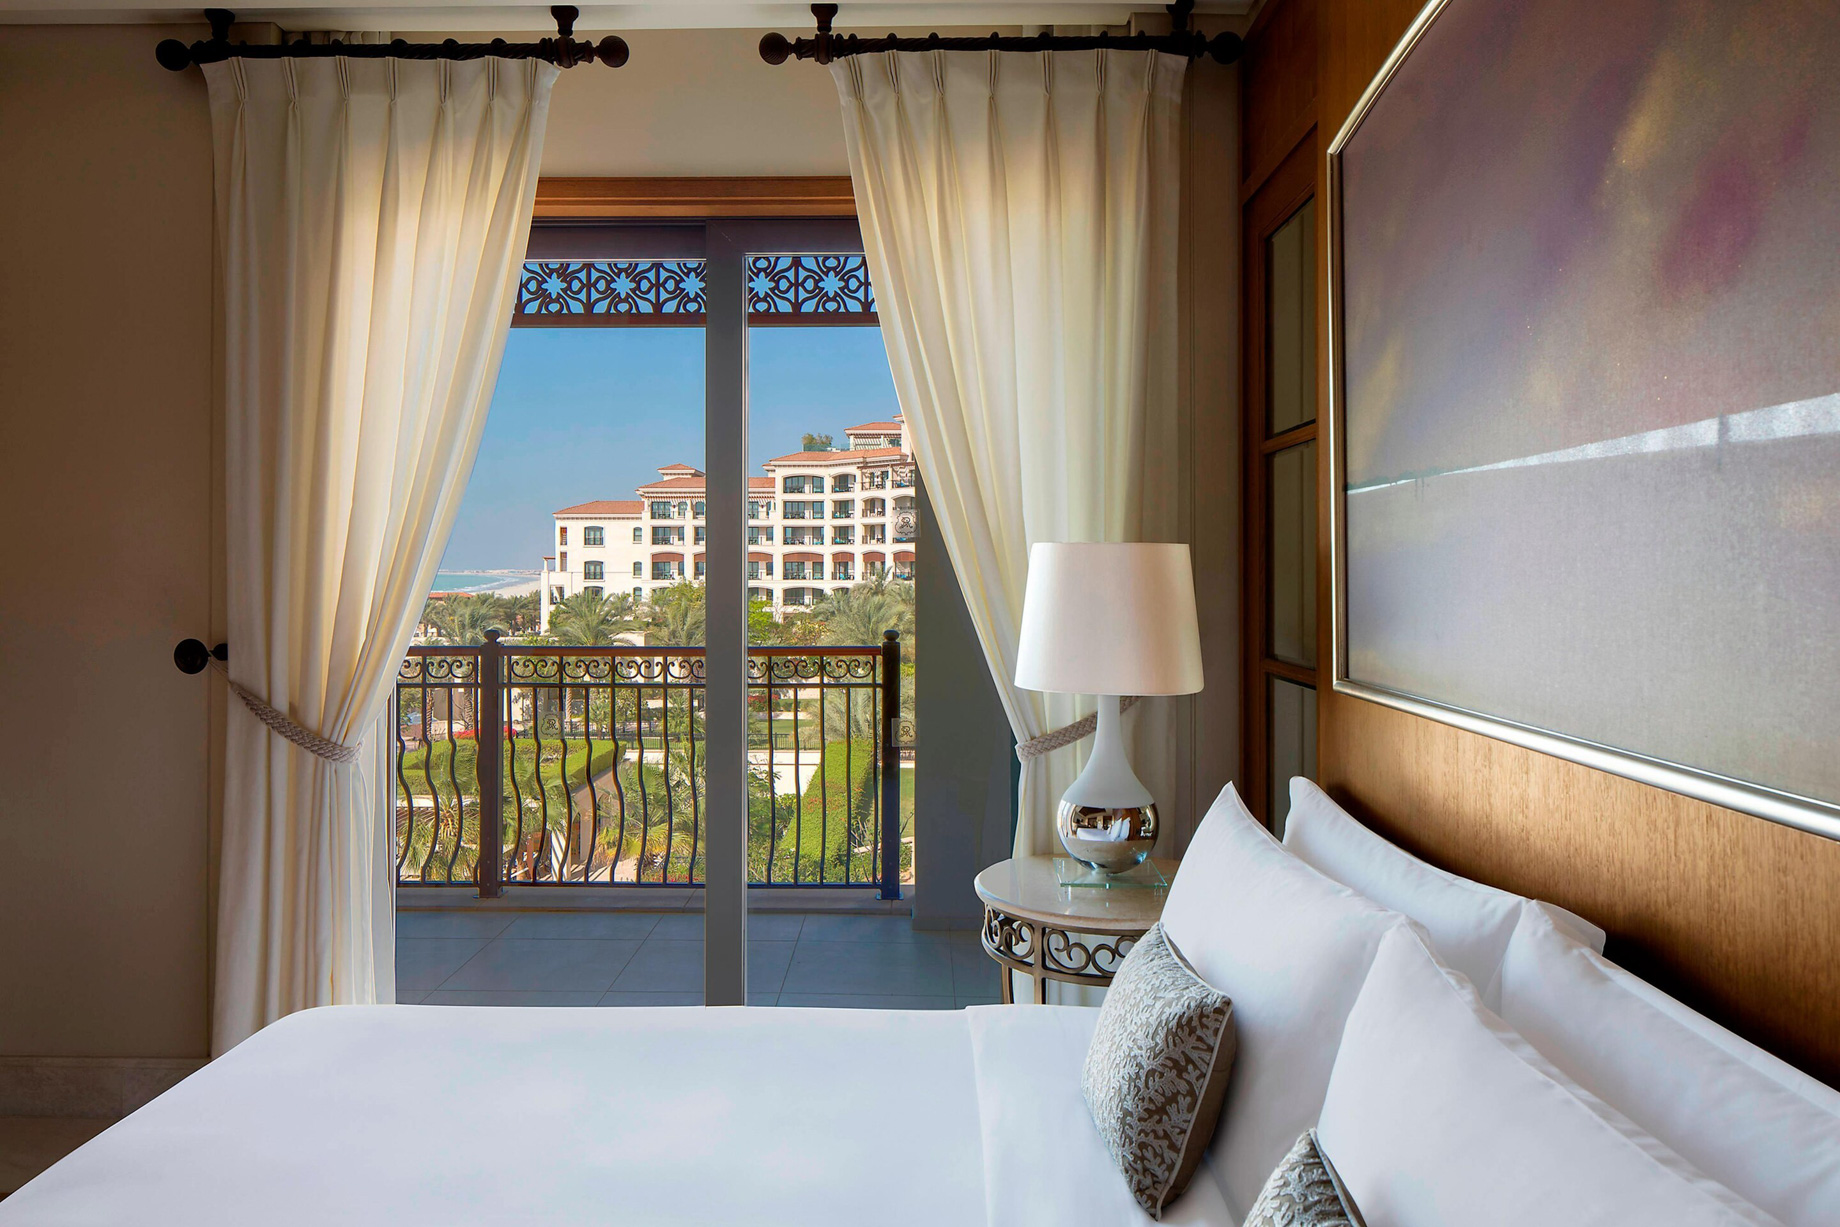 The St. Regis Saadiyat Island Resort – Abu Dhabi, UAE – St. Regis Suite Bedroom Decor